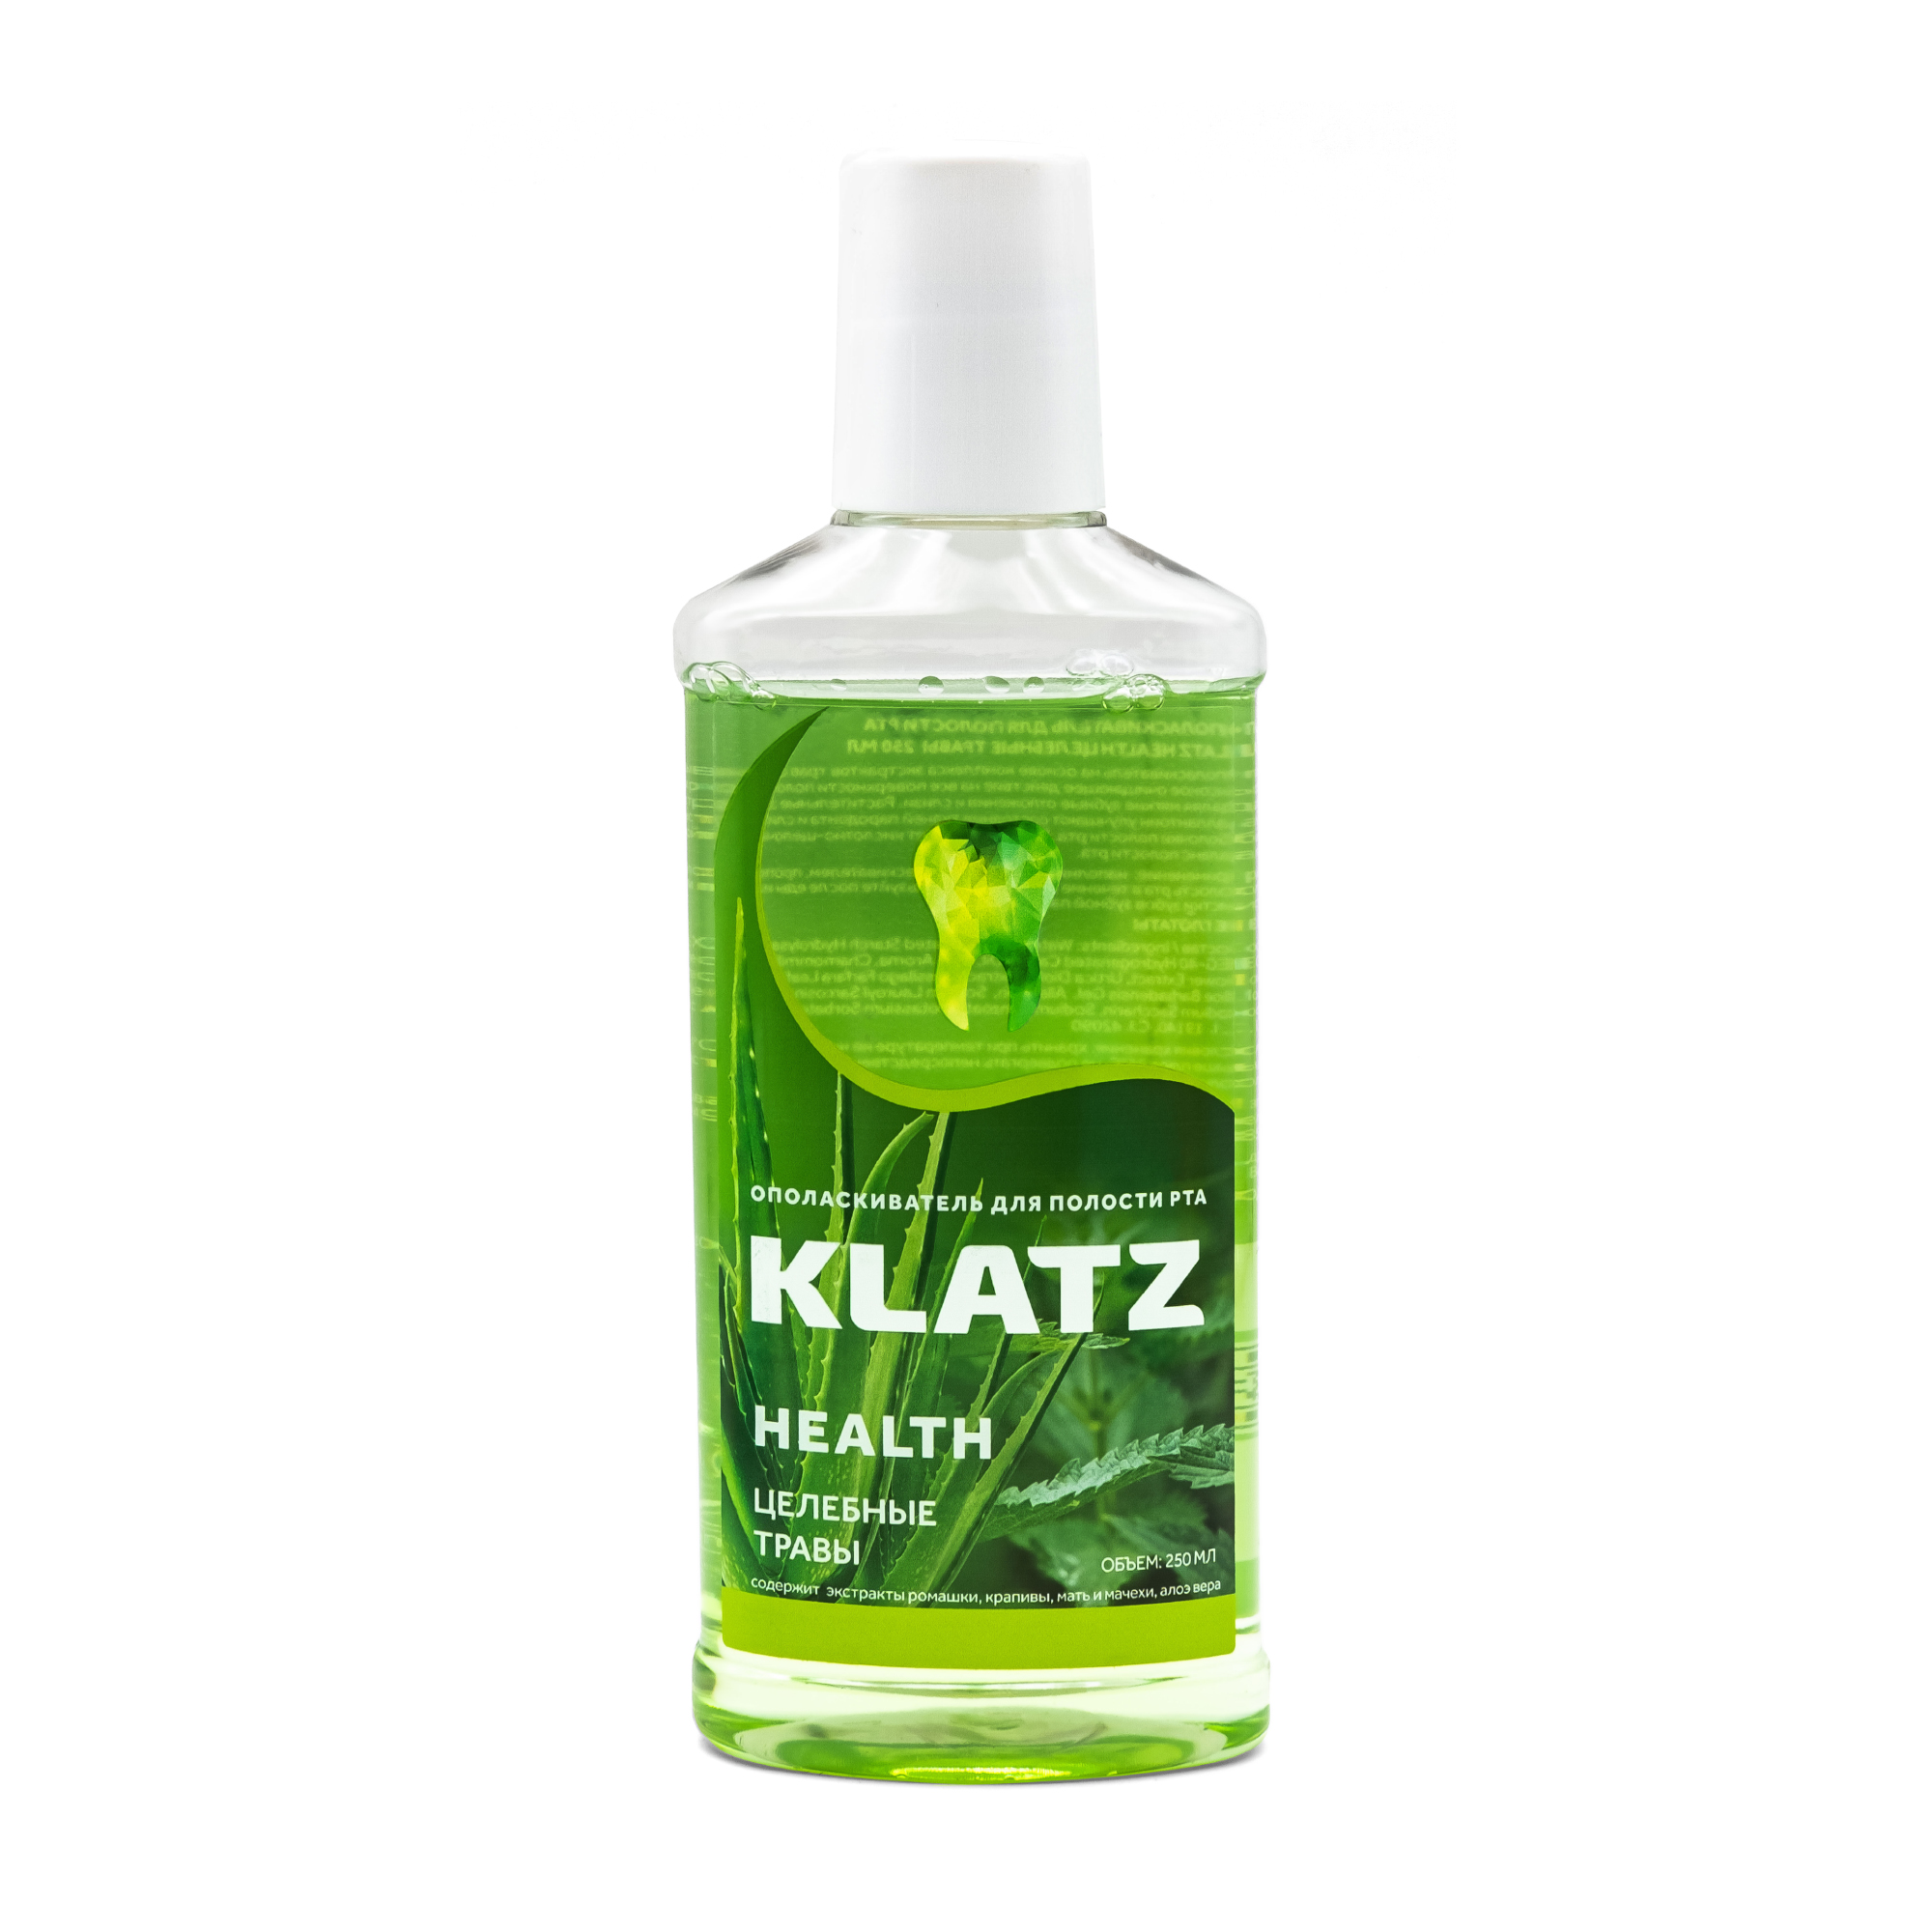 Klatz HEALTH Целебные травы